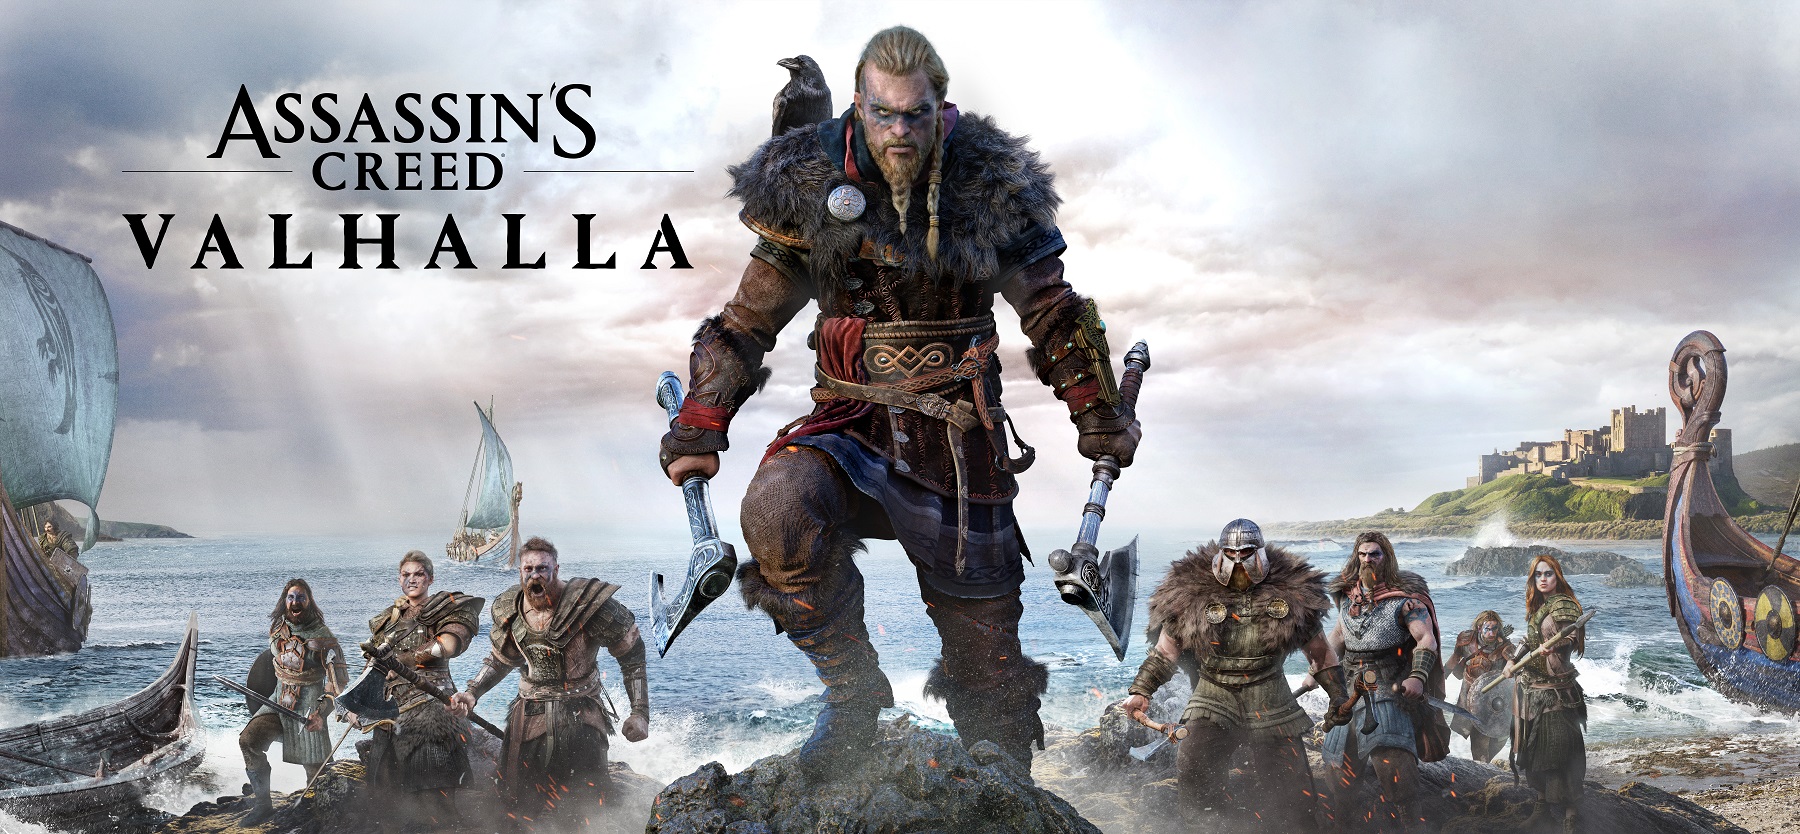 Viva como um lendário e destemido viking em Assassin’s Creed Valhalla